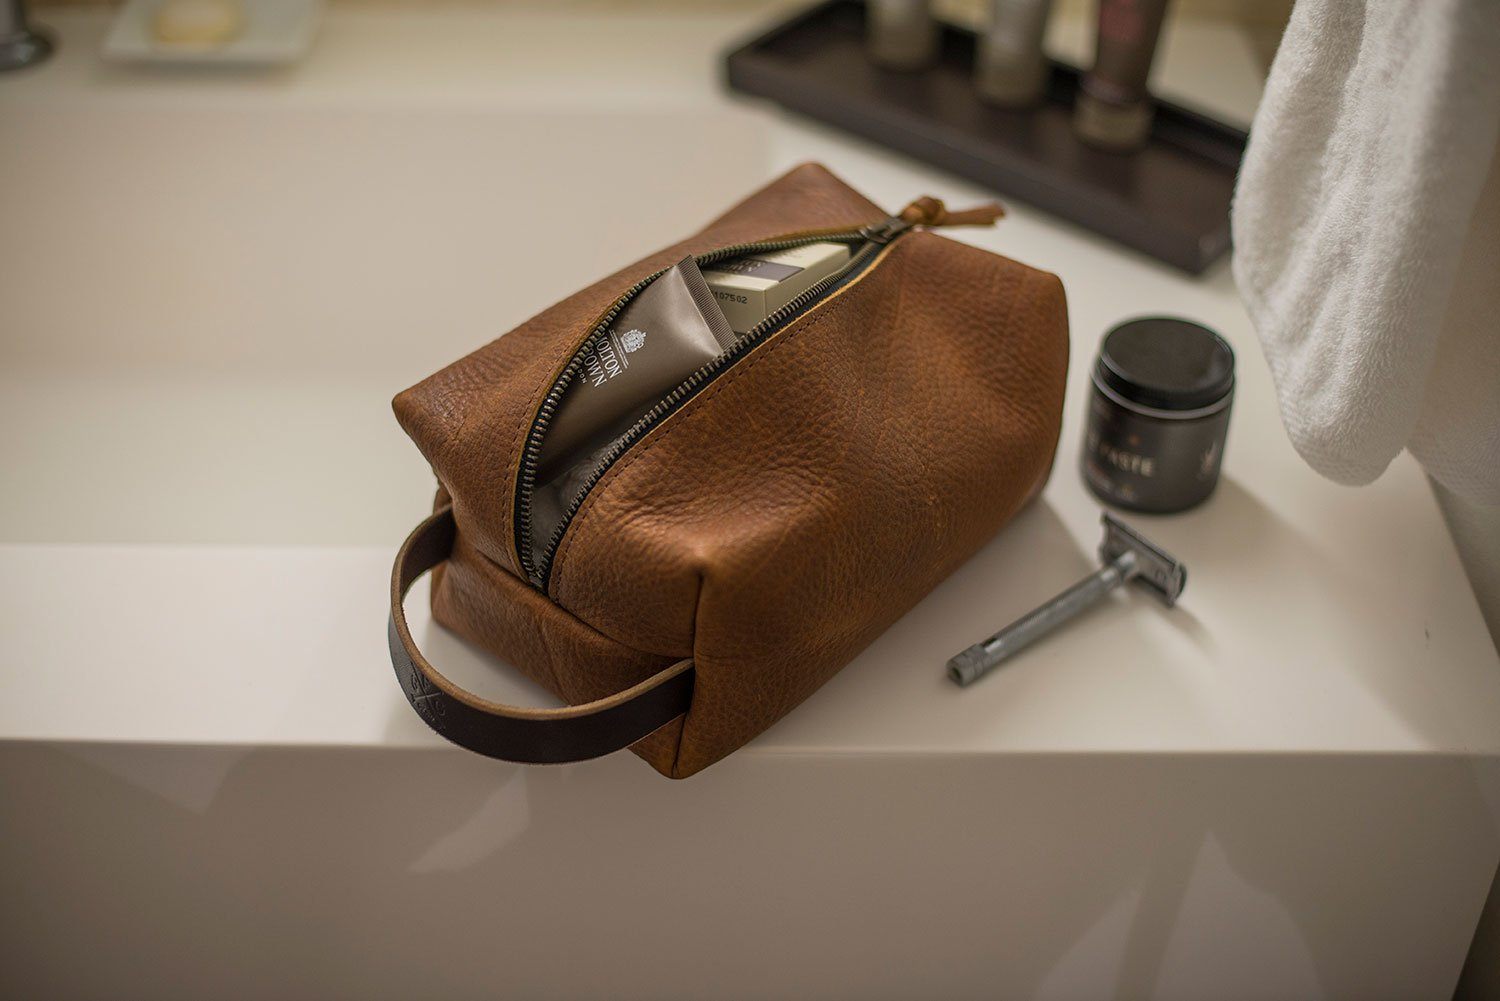 Genuine Leather Toiletry Bag for Men or Women - Travel Shaving Dopp Ki